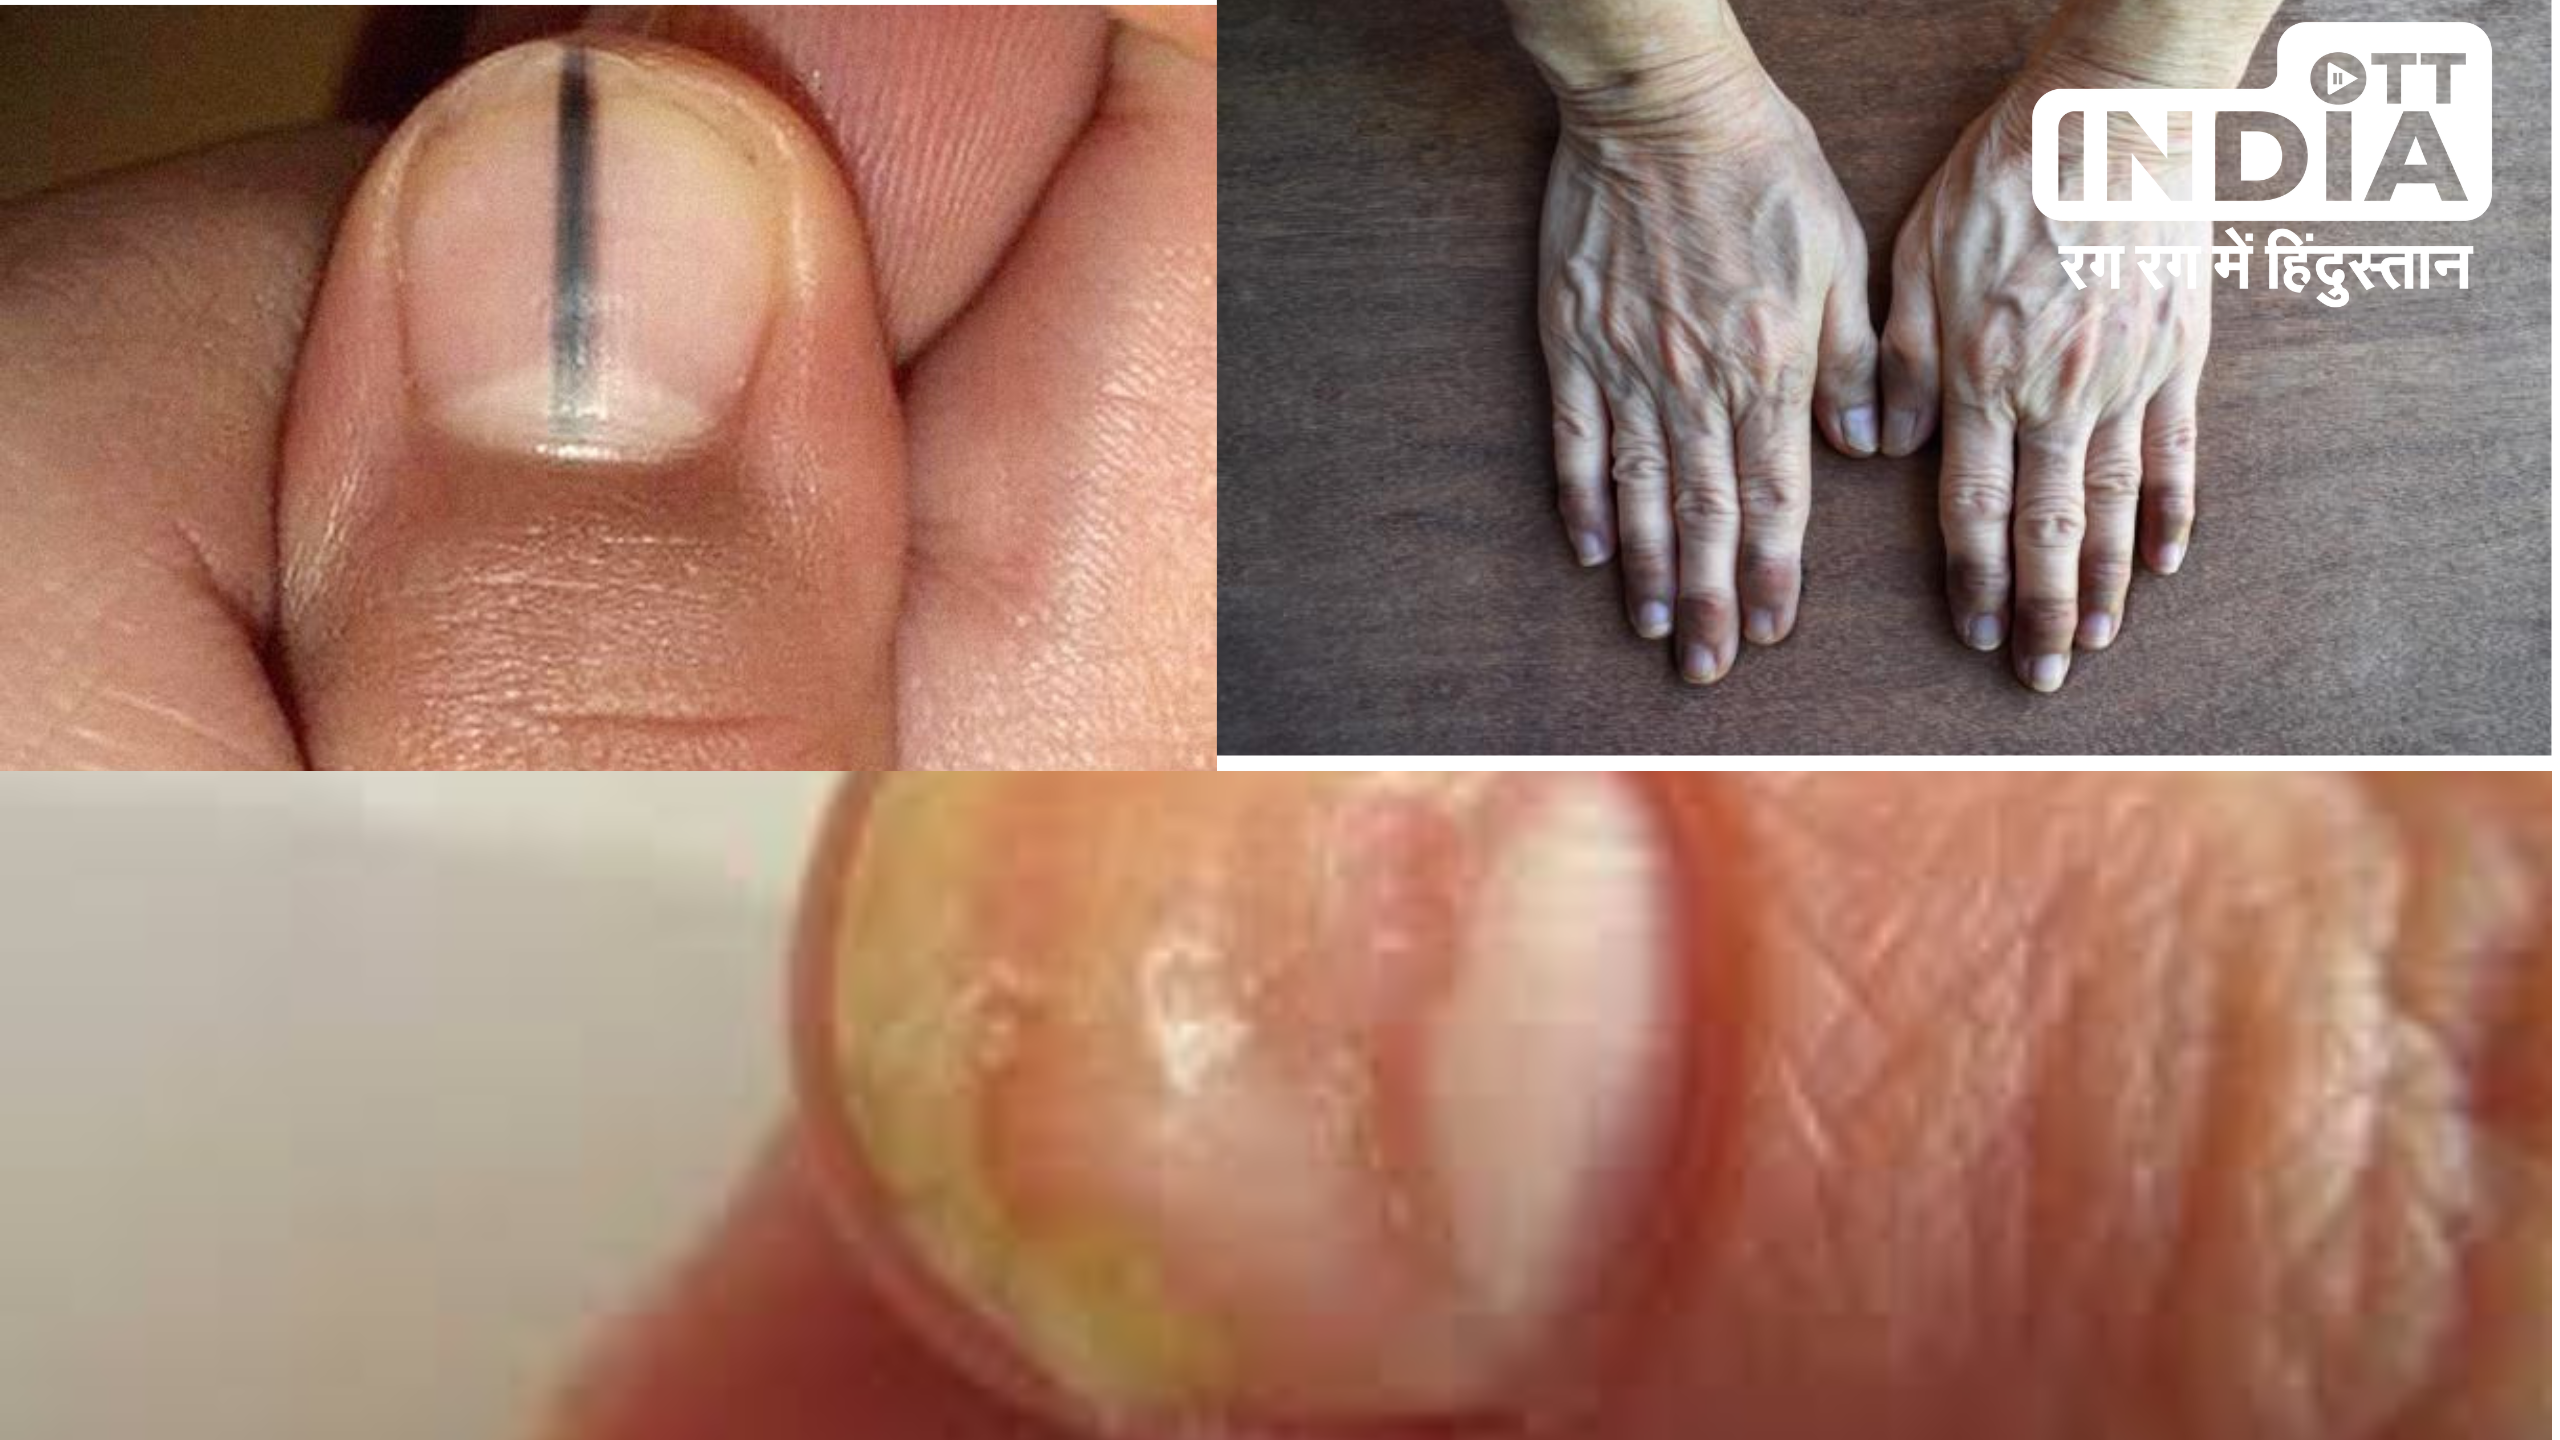 Nails Sign Of Diseases  : नाखूनों के बदलते रंग गंभीर बीमारियों के हो सकते हैं संकेत , जानिये विस्तार से